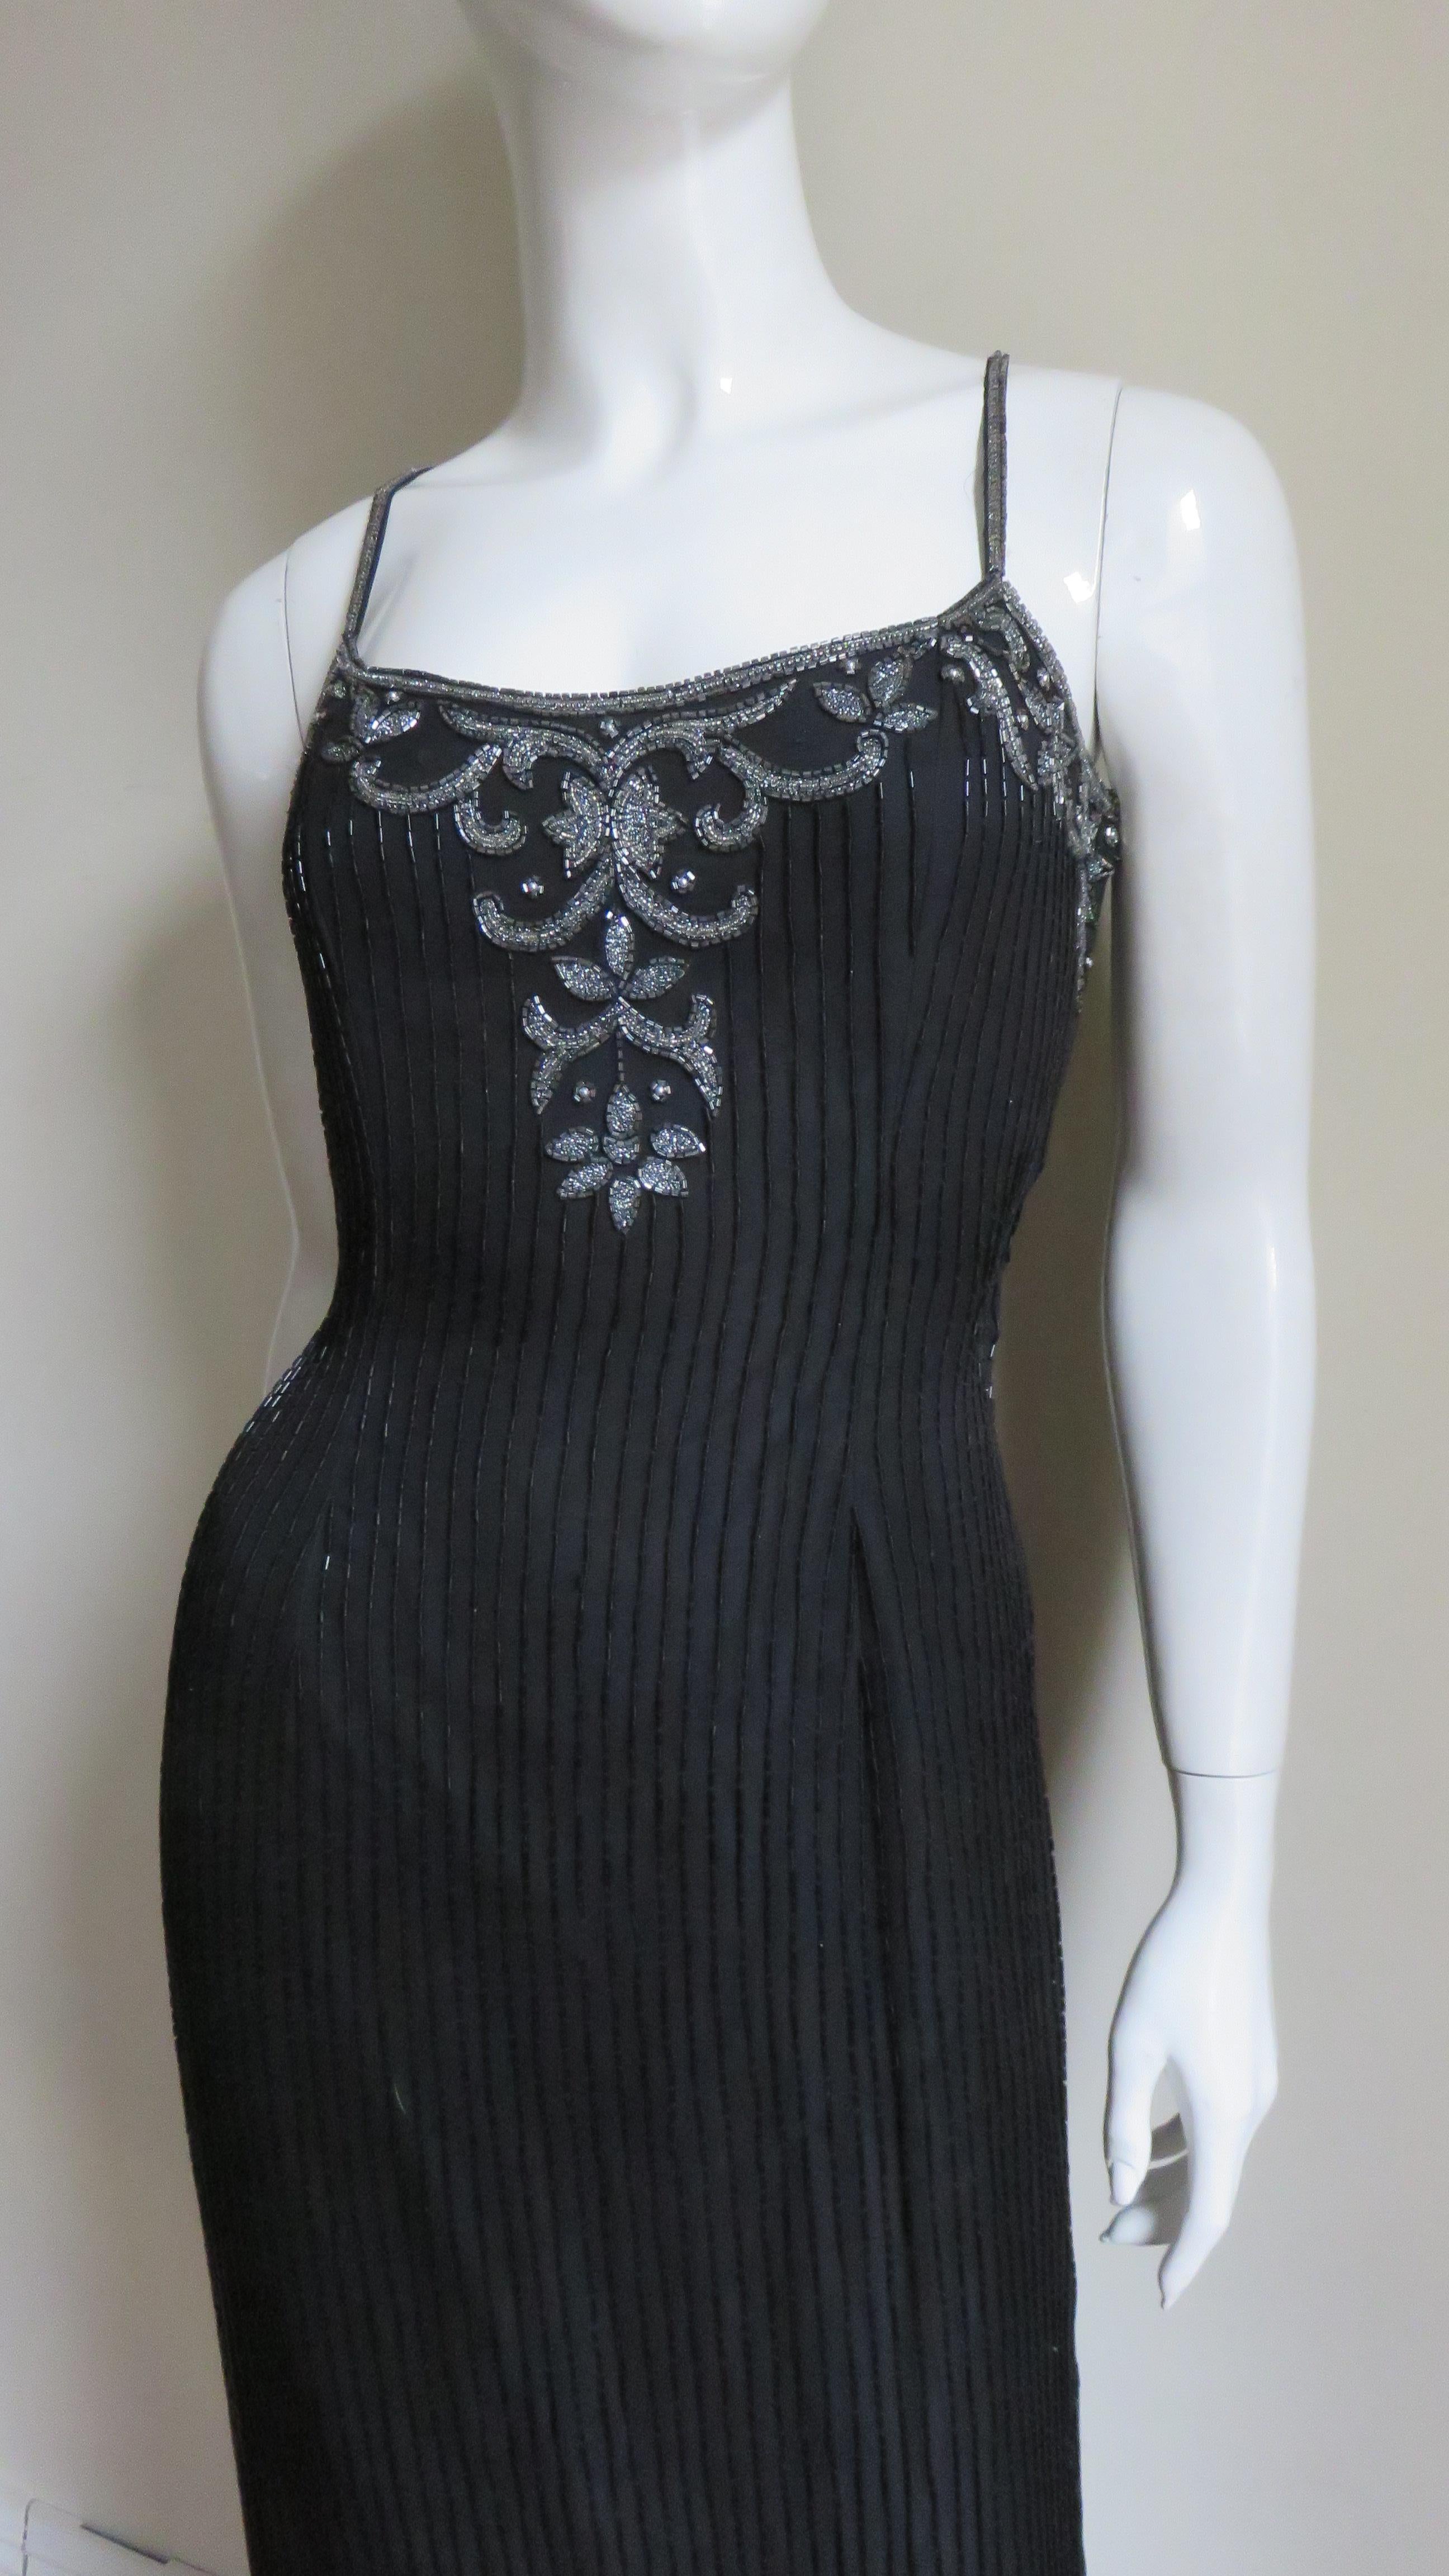 Ein wunderschönes, perlenbesetztes, schwarzes Seidenkleid von Sonia Rykiel in voller Länge. Es gibt Linien von röhrenförmigen schwarzen Glasperlen die gesamte Länge des Kleides und der vorderen Mieder ist mit einem silbernen Perlen Design, das auch